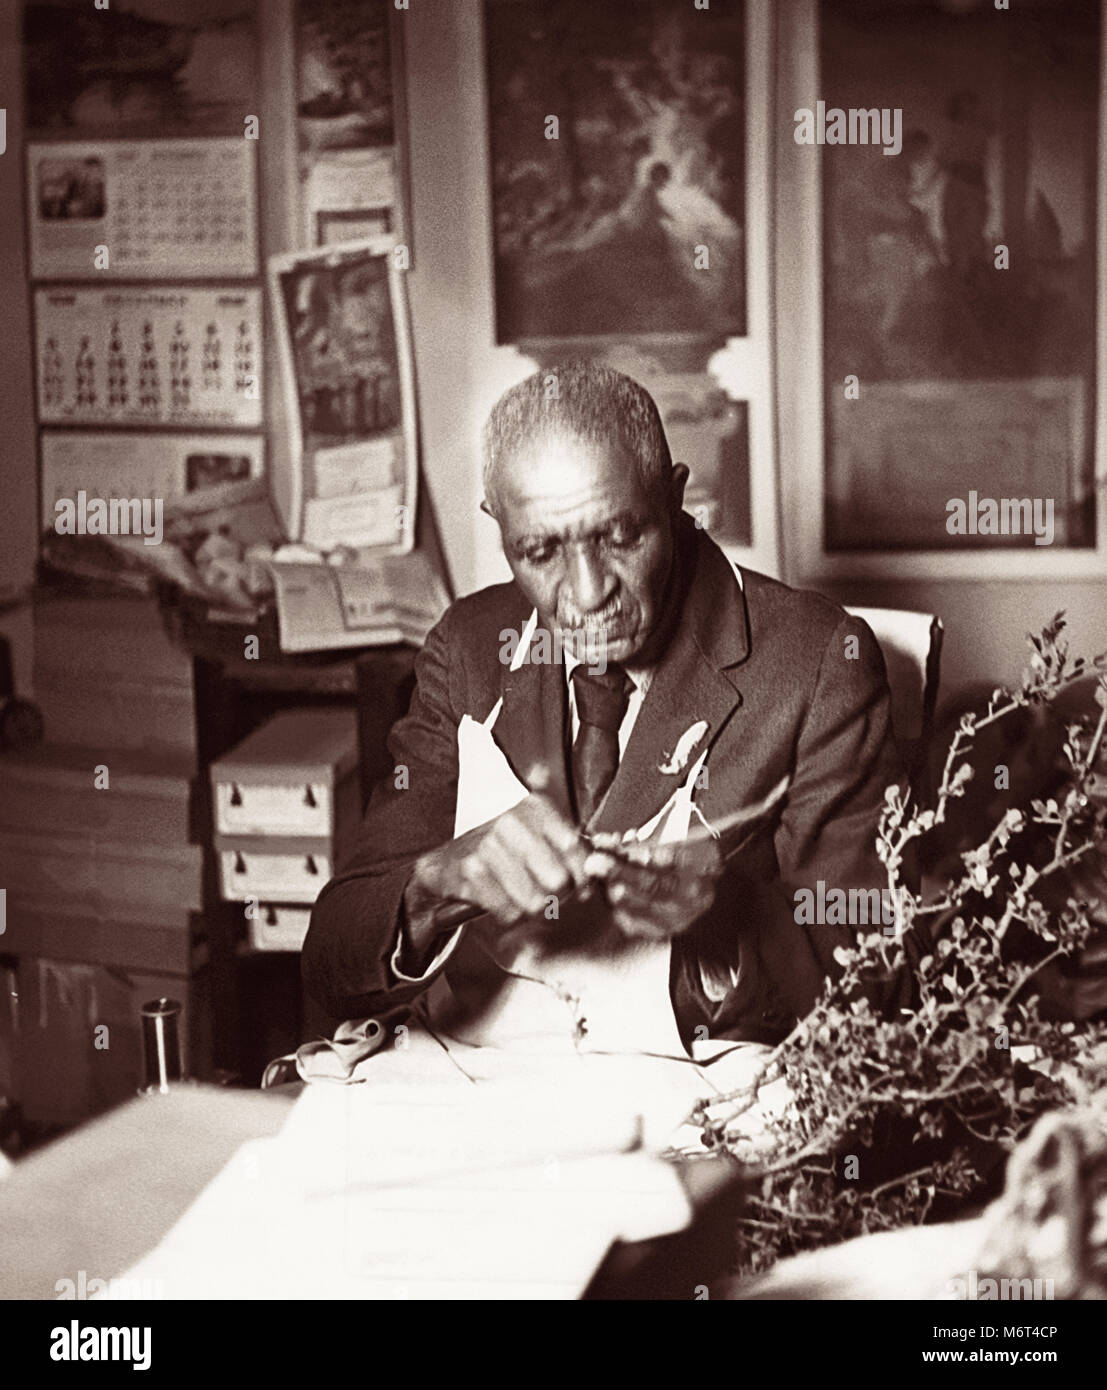 El Dr. George Washington Carver (1864-1943) fue un científico americano, botánico, educador e inventor mejor conocido por su investigación de cultivos alternativos al algodón, como el maní, la soya y el camote. Quería que los campesinos pobres para cultivar estos cultivos alternativos para ayudar en la nutrición de las familias campesinas y para proporcionar otra fuente de ingresos en efectivo para mejorar la calidad de vida del agricultor. El Dr. Carver es mostrado en el trabajo en el Tuskegee Institute en septiembre de 1938. Foto de stock